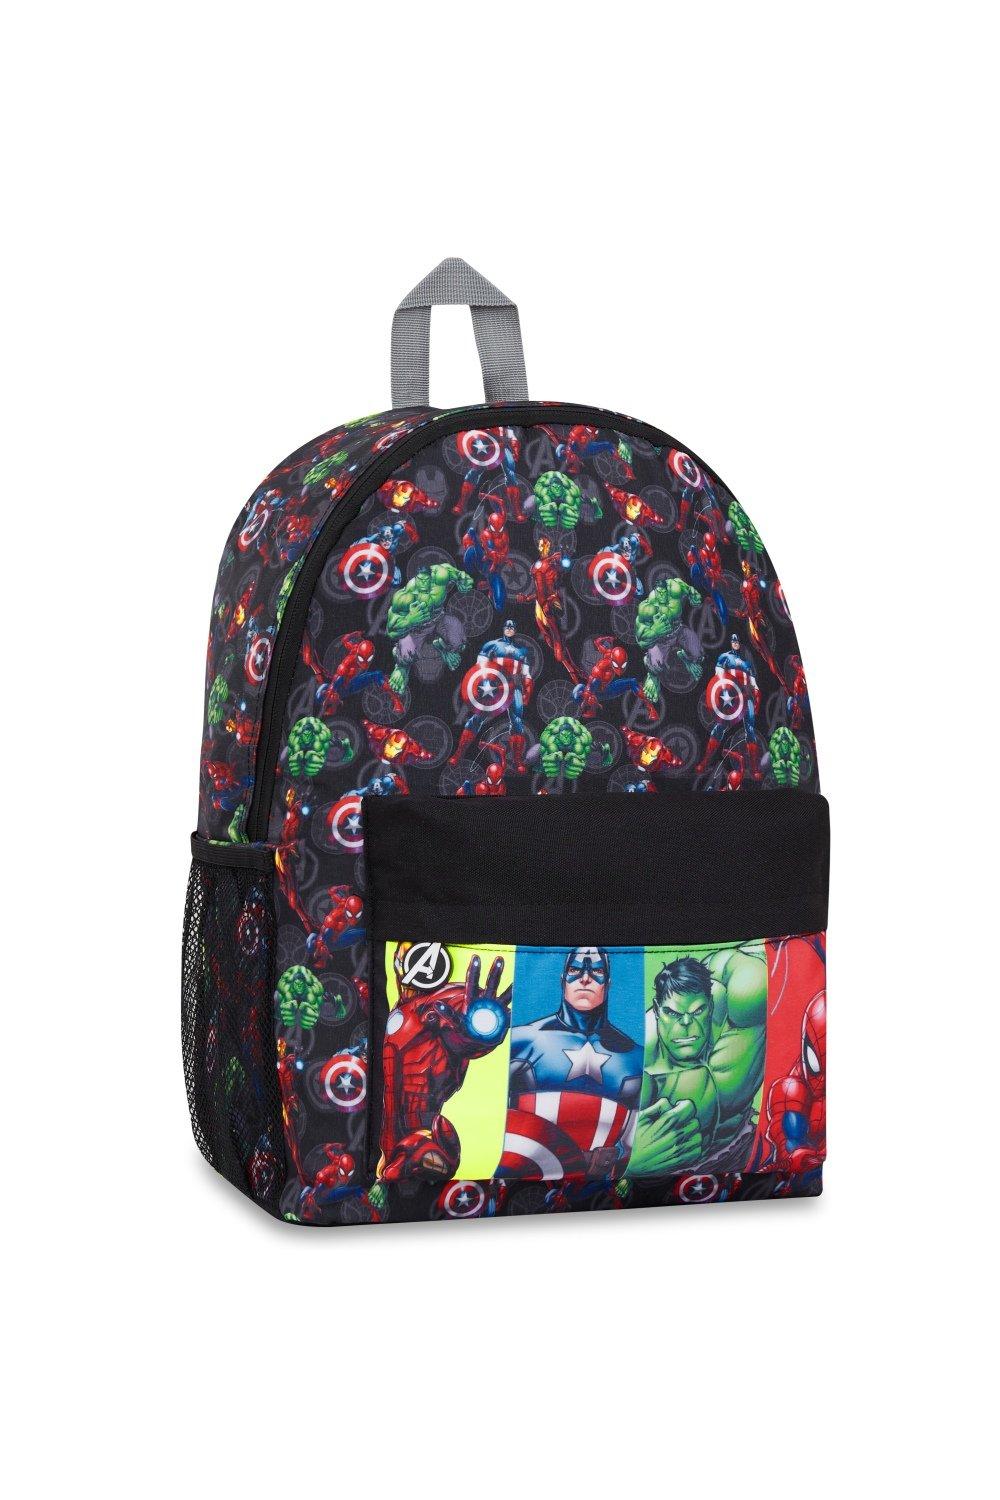 Рюкзак школы Мстителей Marvel, мультиколор детский рюкзак мстителей avengers синий